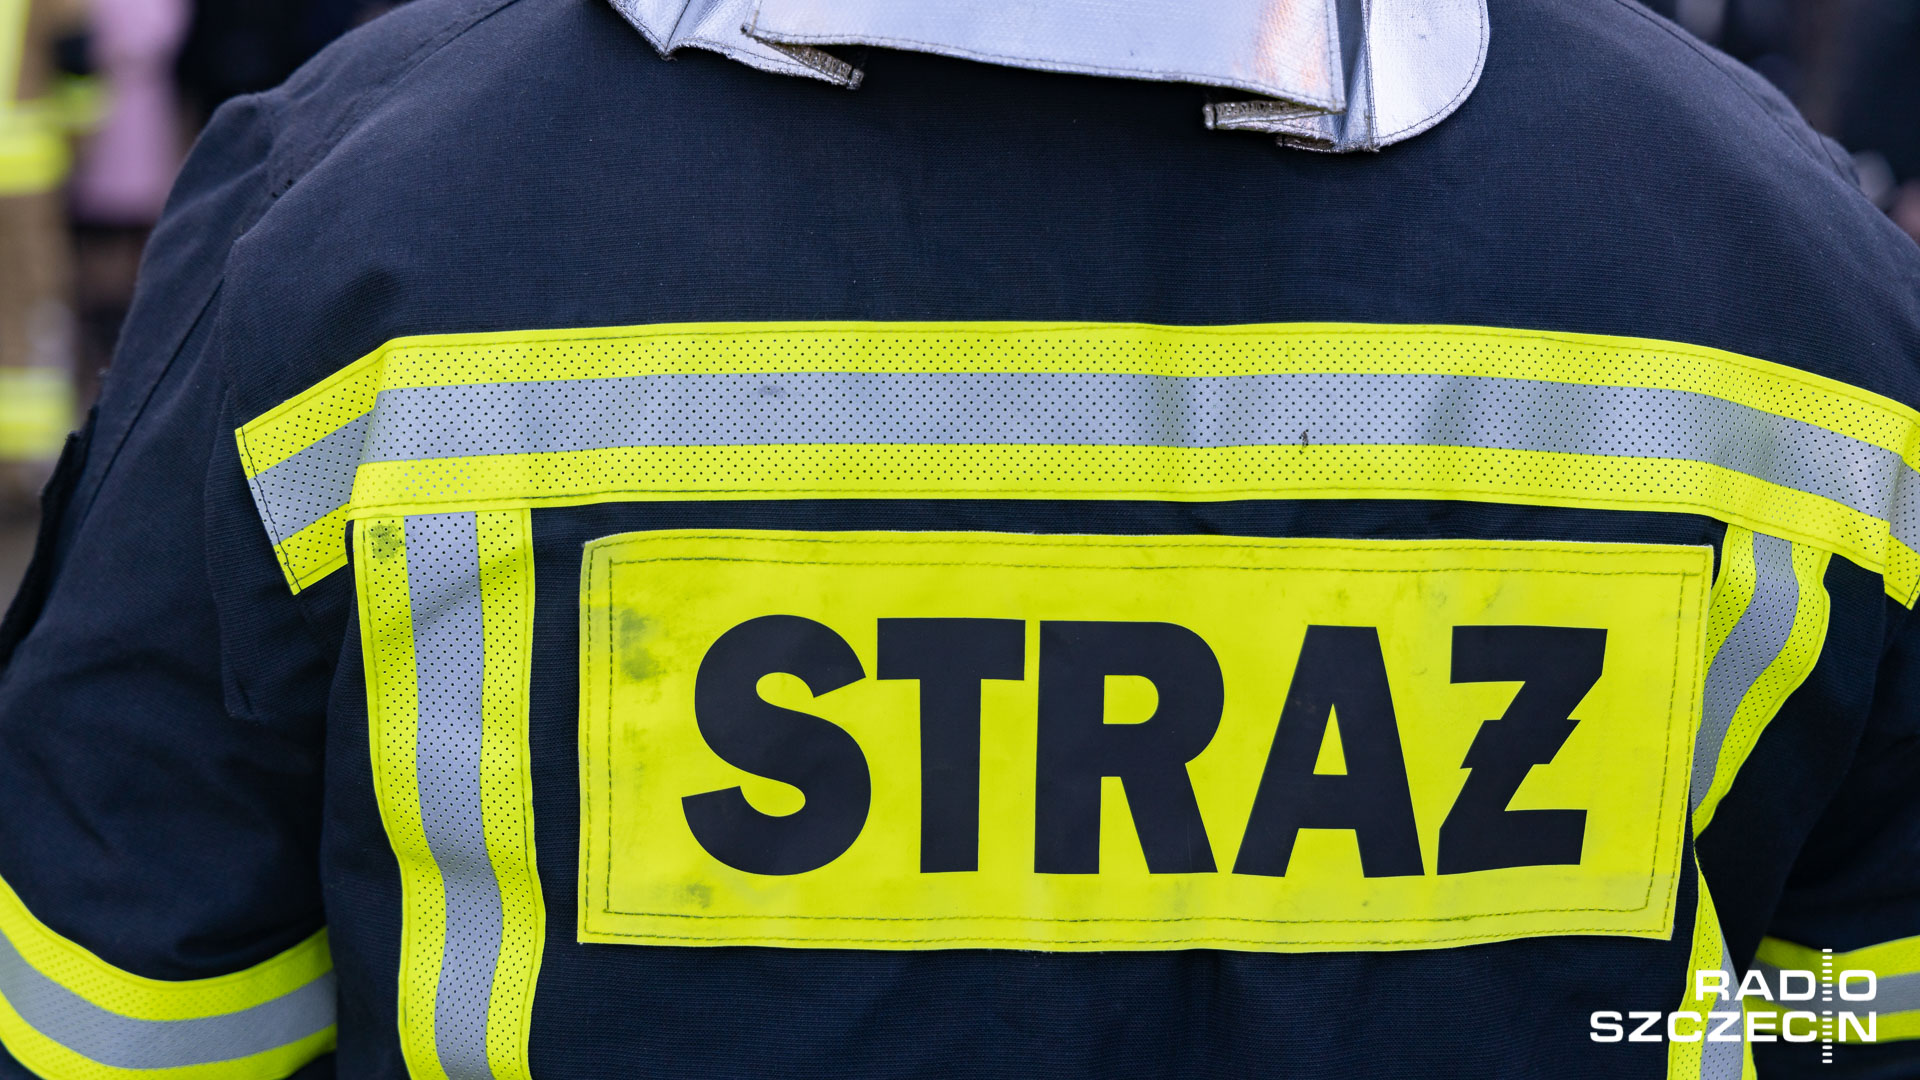 Utrudnienia na autostradzie A6. Między węzłami Szczecin Kijewo i Szczecin Dąbie doszło do pożaru samochodu.